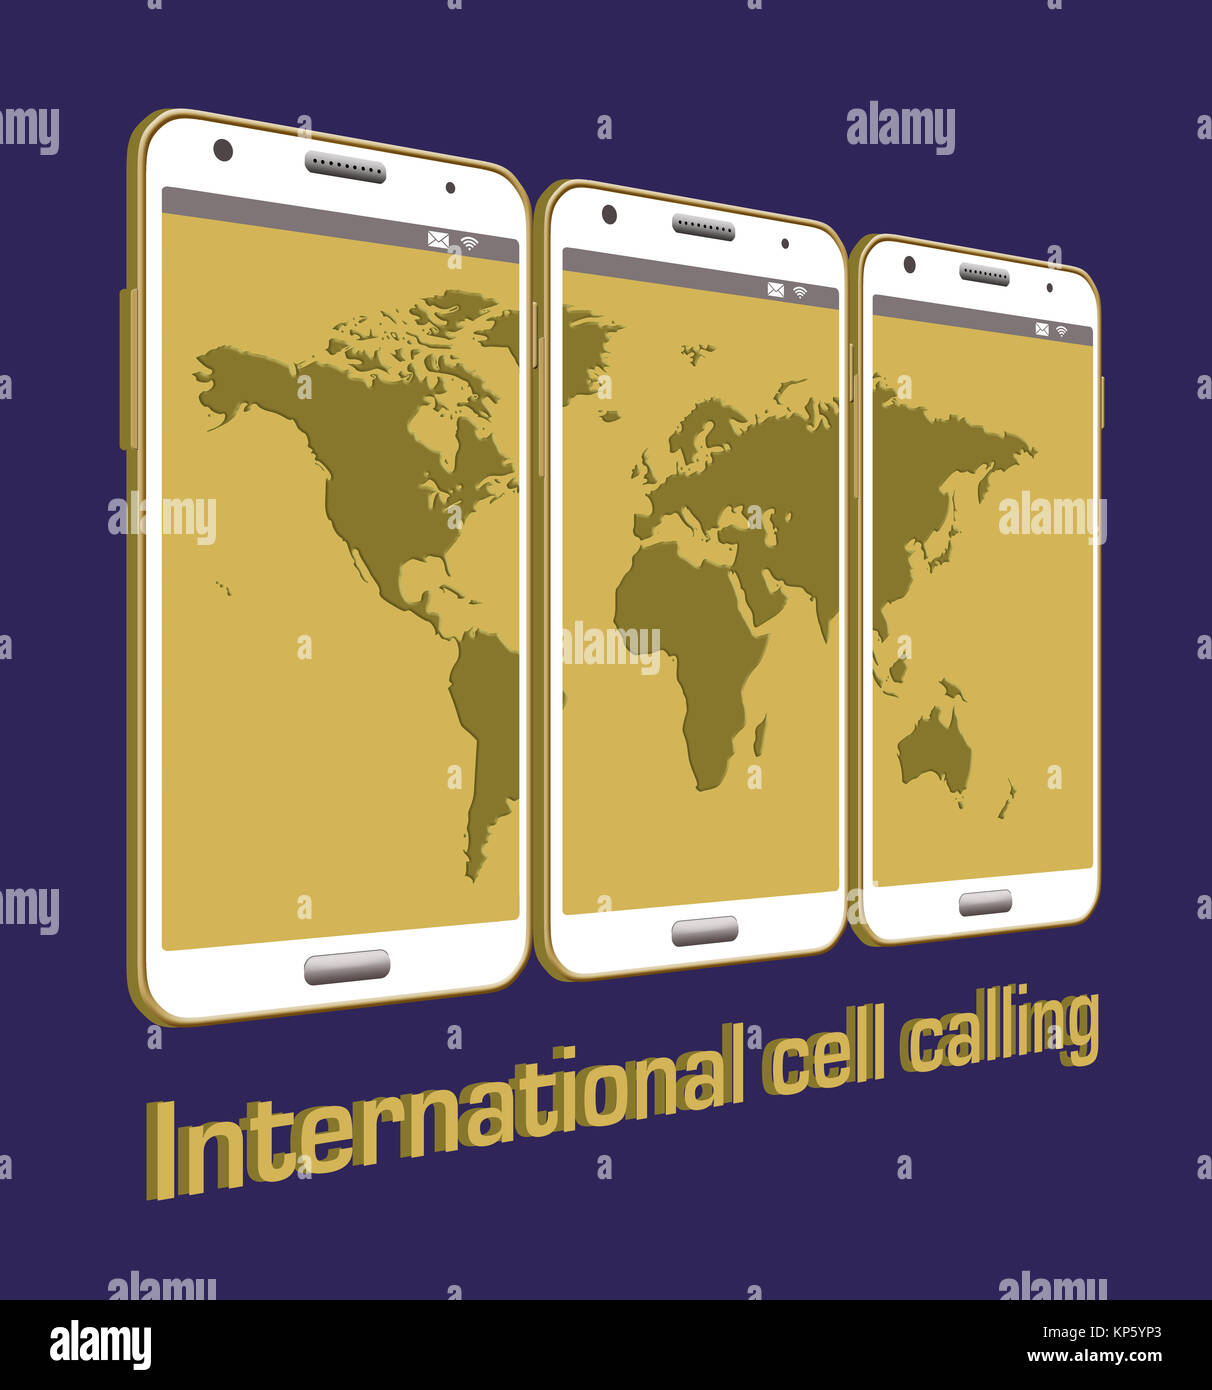 Esta es una ilustración para ir con una historia acerca de cómo utilizar su teléfono móvil para llamadas internacionales. Incluye cuatro teléfonos celulares y un mapa del mundo sprea Foto de stock